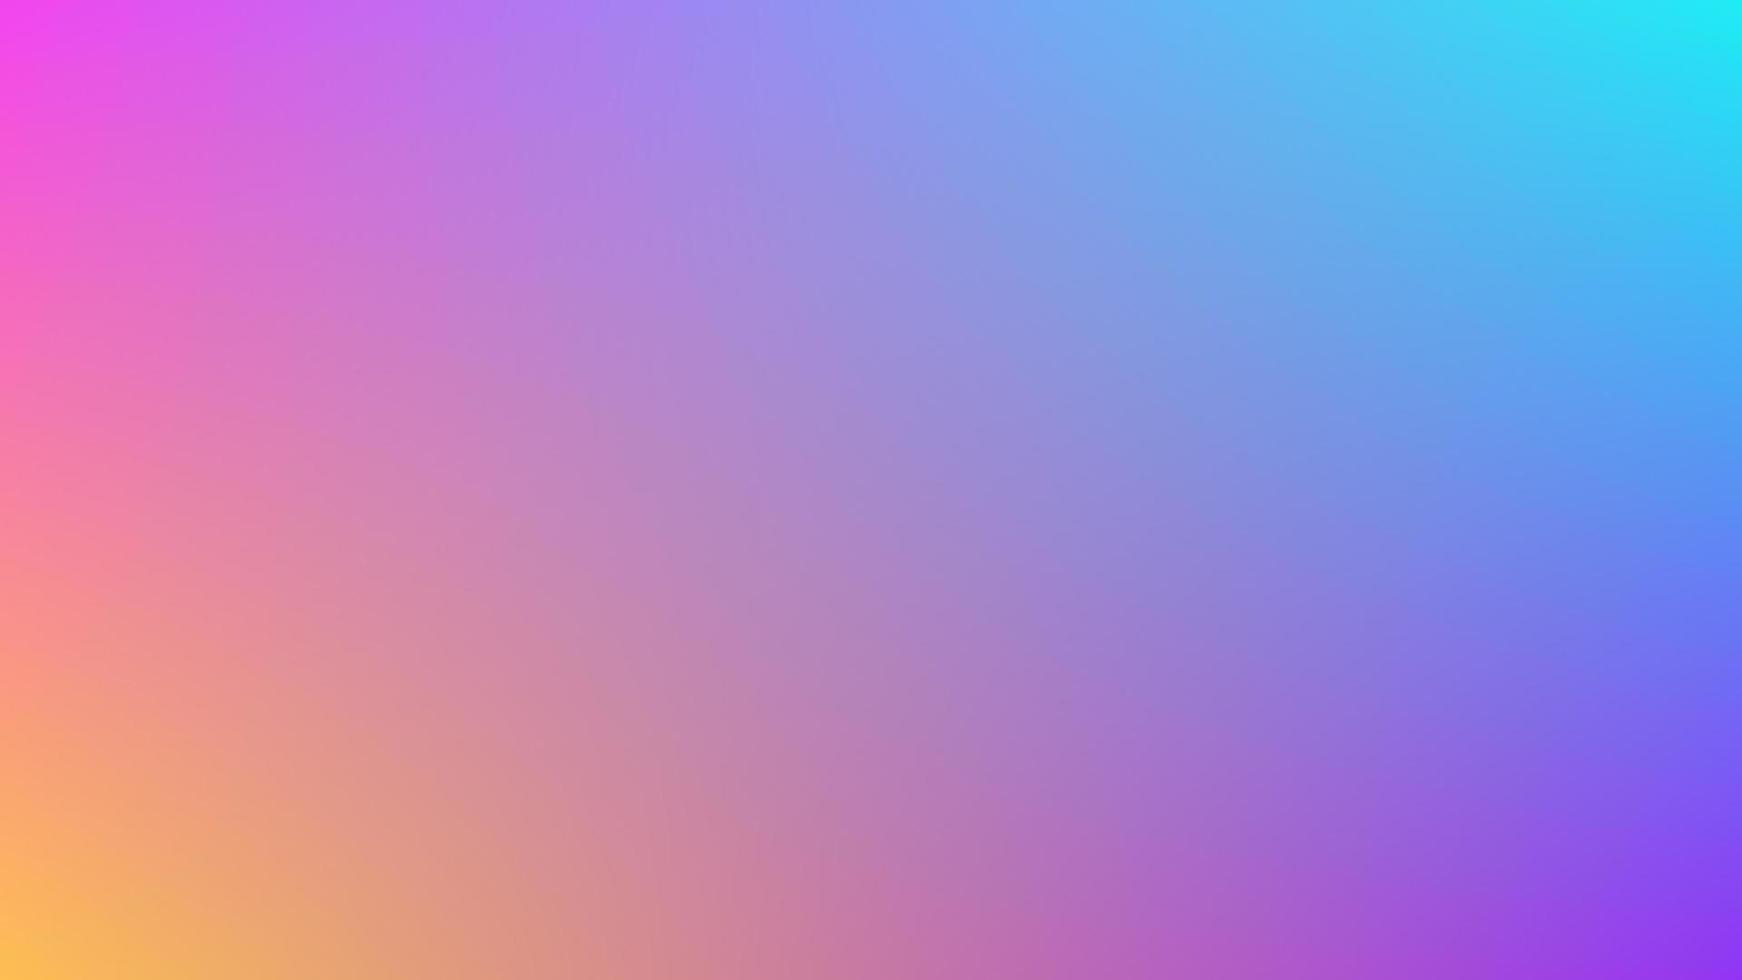 ljus blå, rosa, orange och lila lutning bakgrund vektor